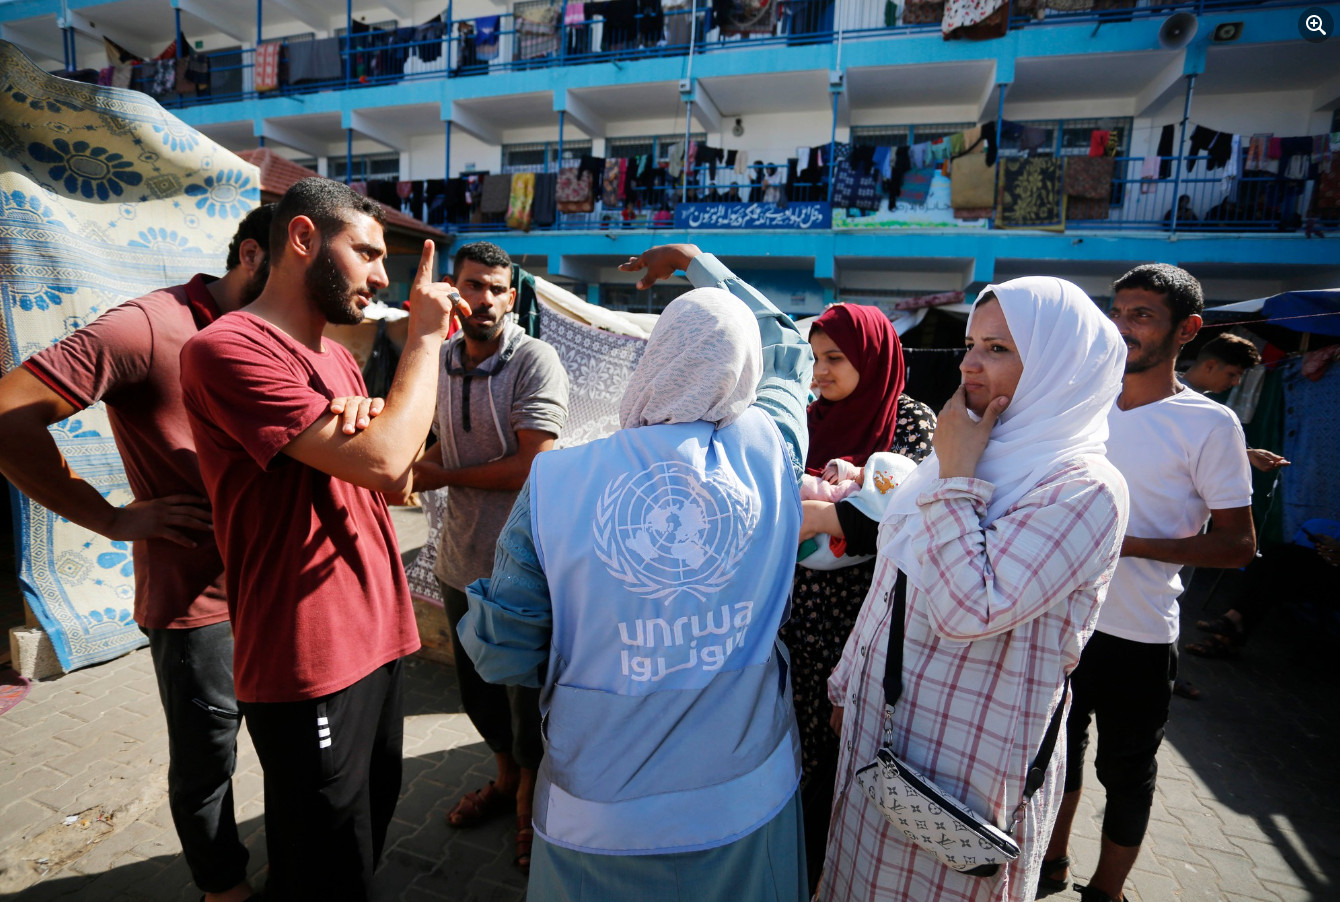 ΠΟΥ: Η αντιπαράθεση για την UNRWA εκτρέπει την προσοχή από την ανθρωπιστική κρίση